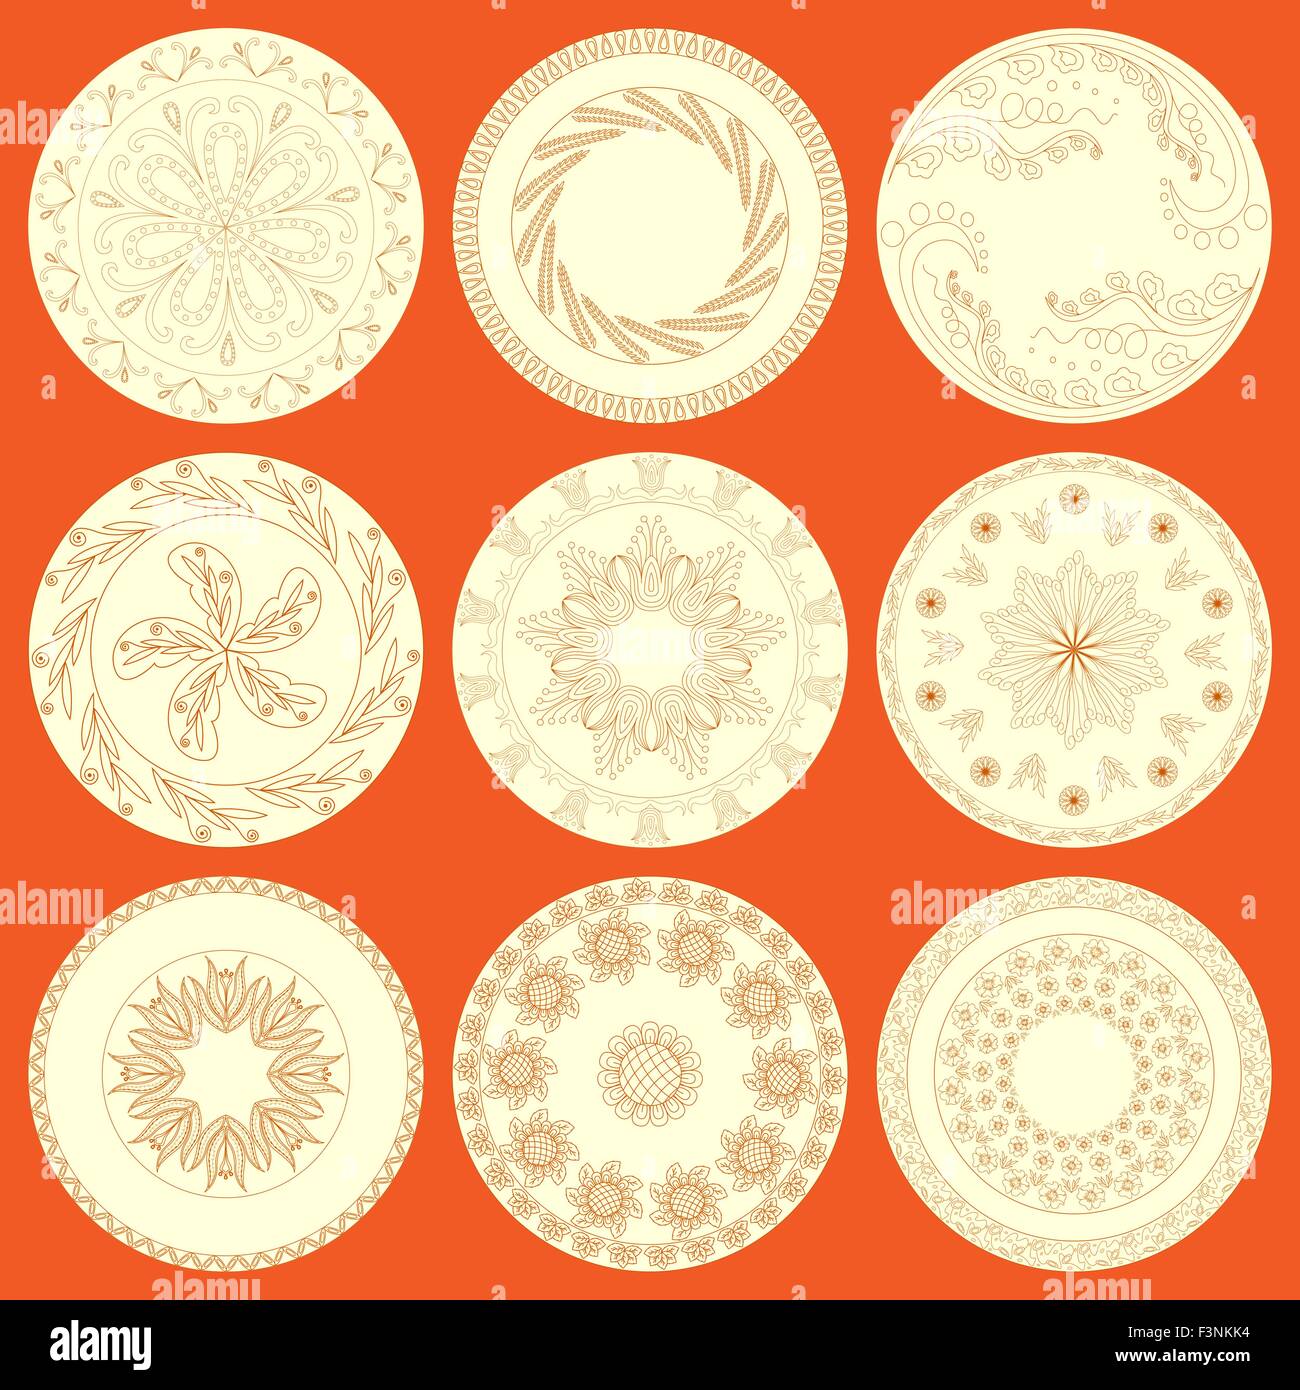 Satz von neun Platten mit verschiedenen Hand Zeichnung floralen Mustern als keramisches Geschirr. Bearbeitbares Vektor-illustration Stock Vektor